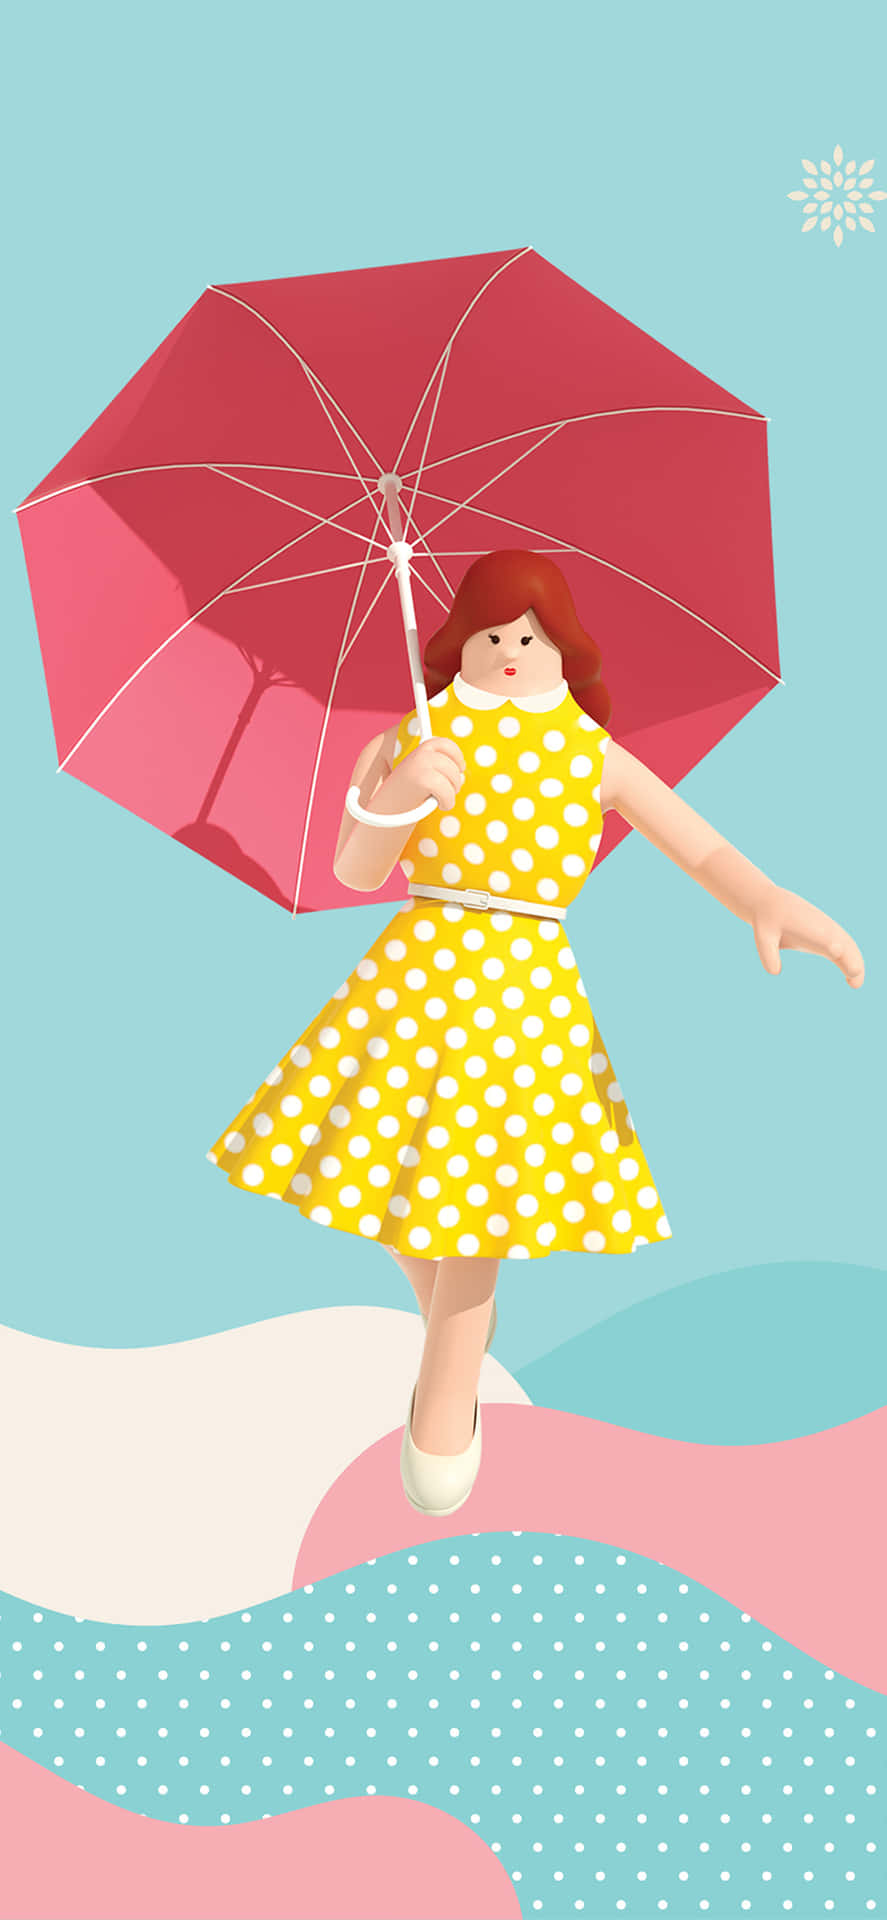 En pige holder et paraply mens hun går i regnen Wallpaper